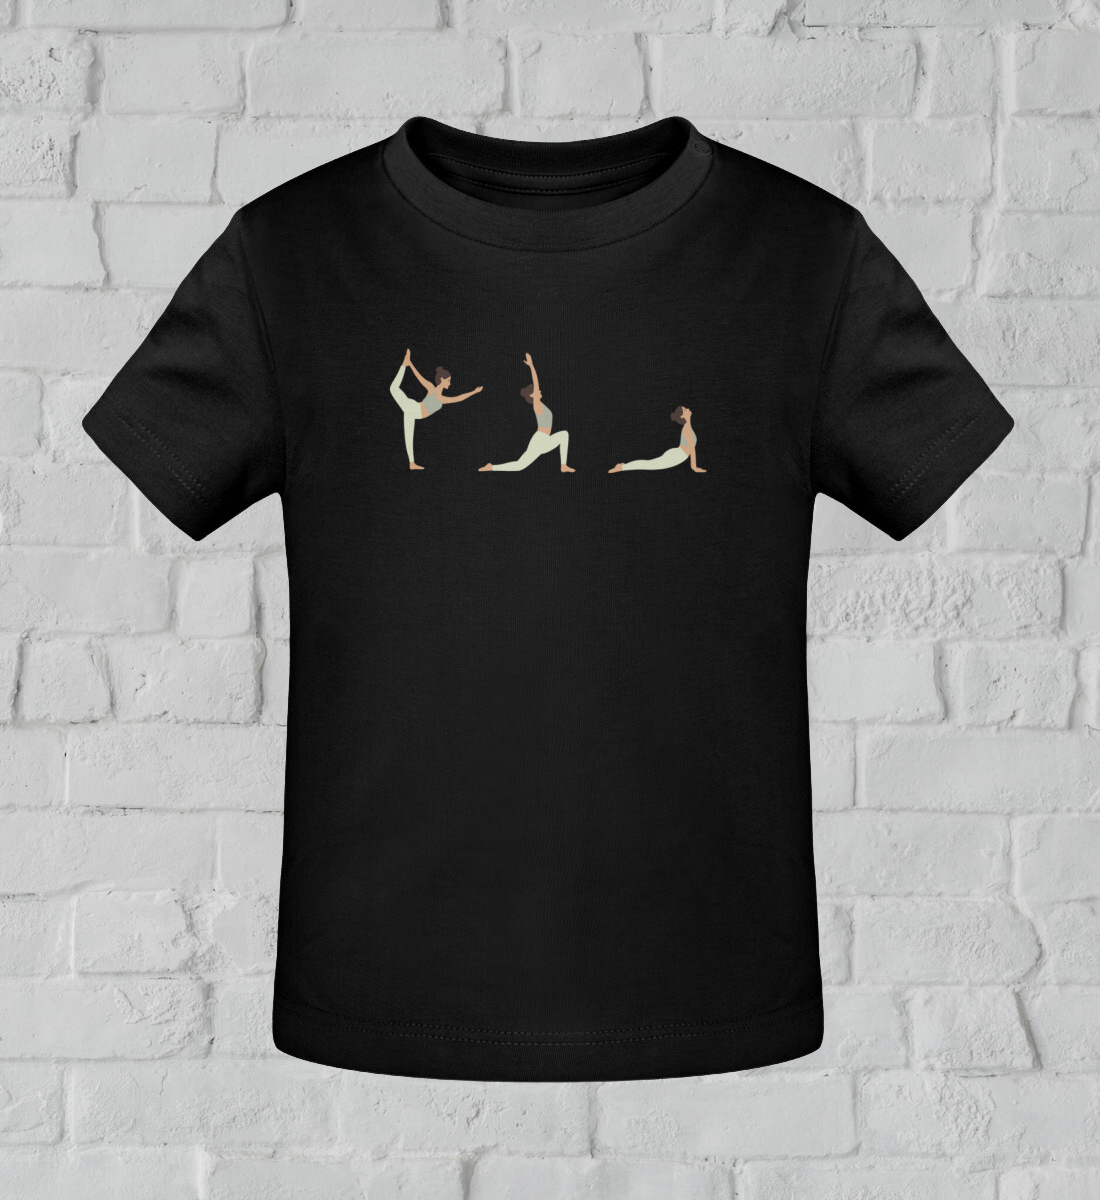 yoga posen l kinder yoga shirt schwarz l kinder yoga bekleidung l nachhaltige mode für kinder l kinder mode online shoppen